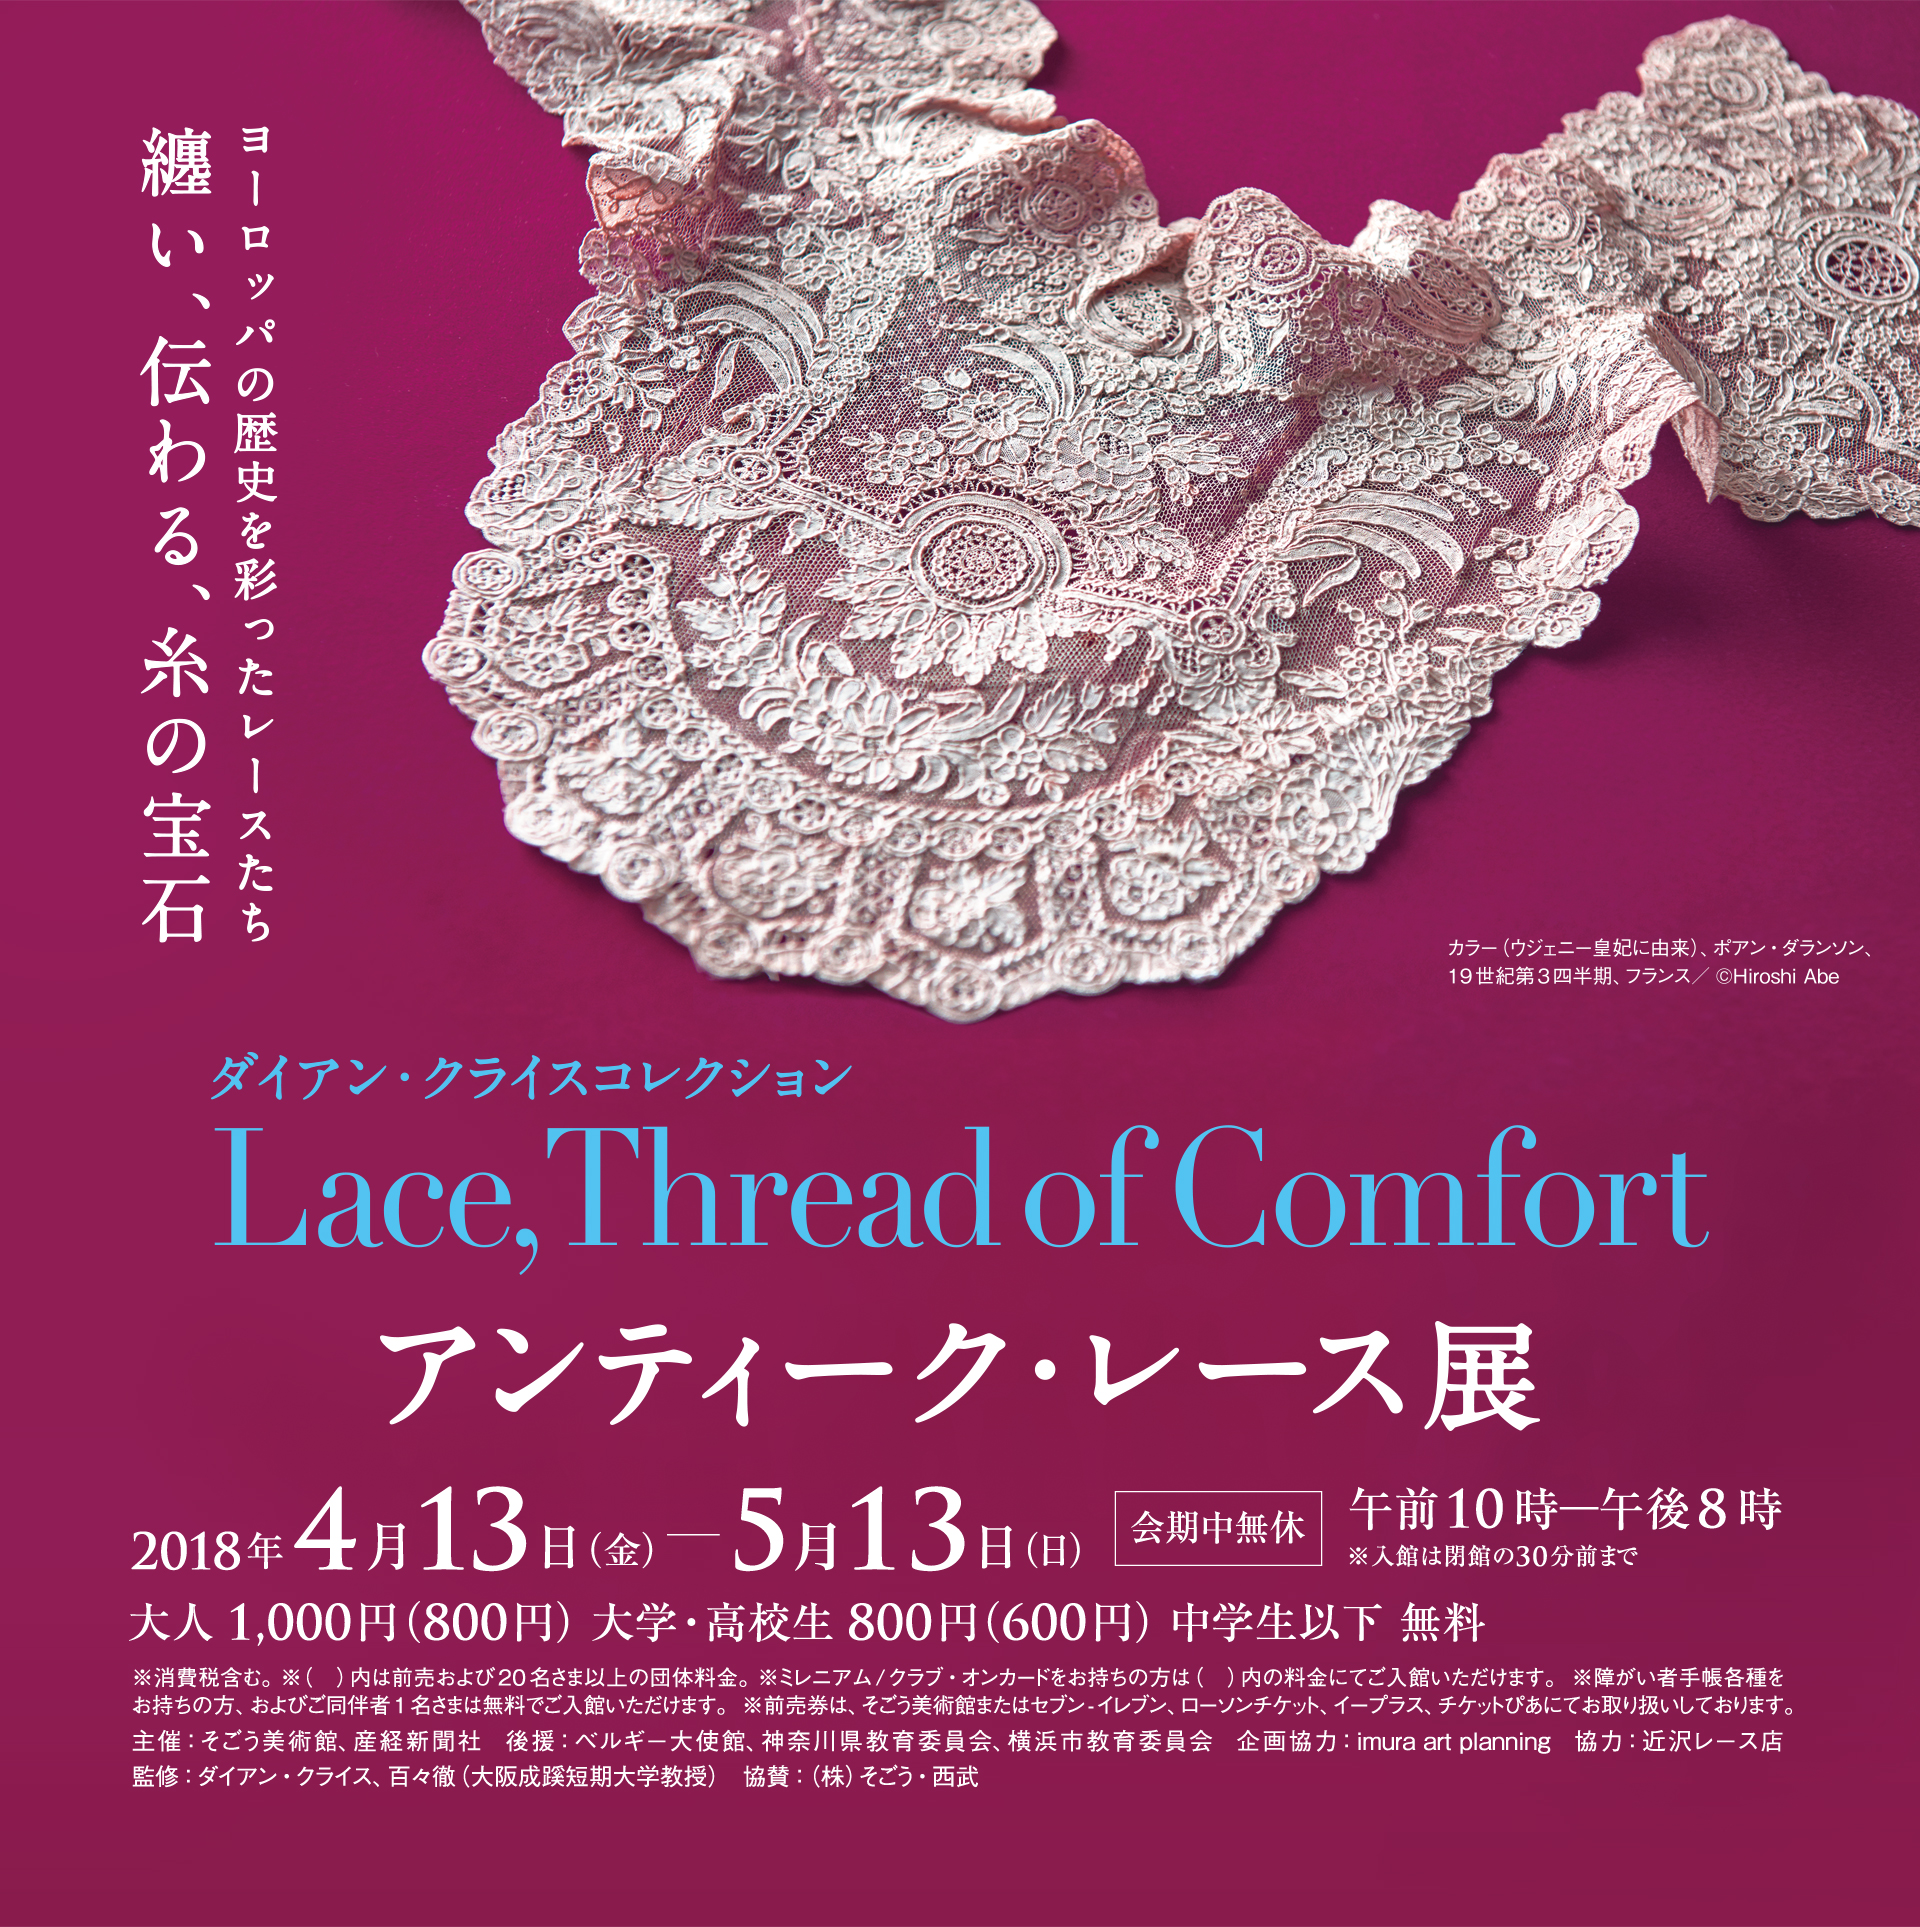 ダイアン・クライスコレクション アンティーク・レース展 〜Lace,Thread of Comfort〜